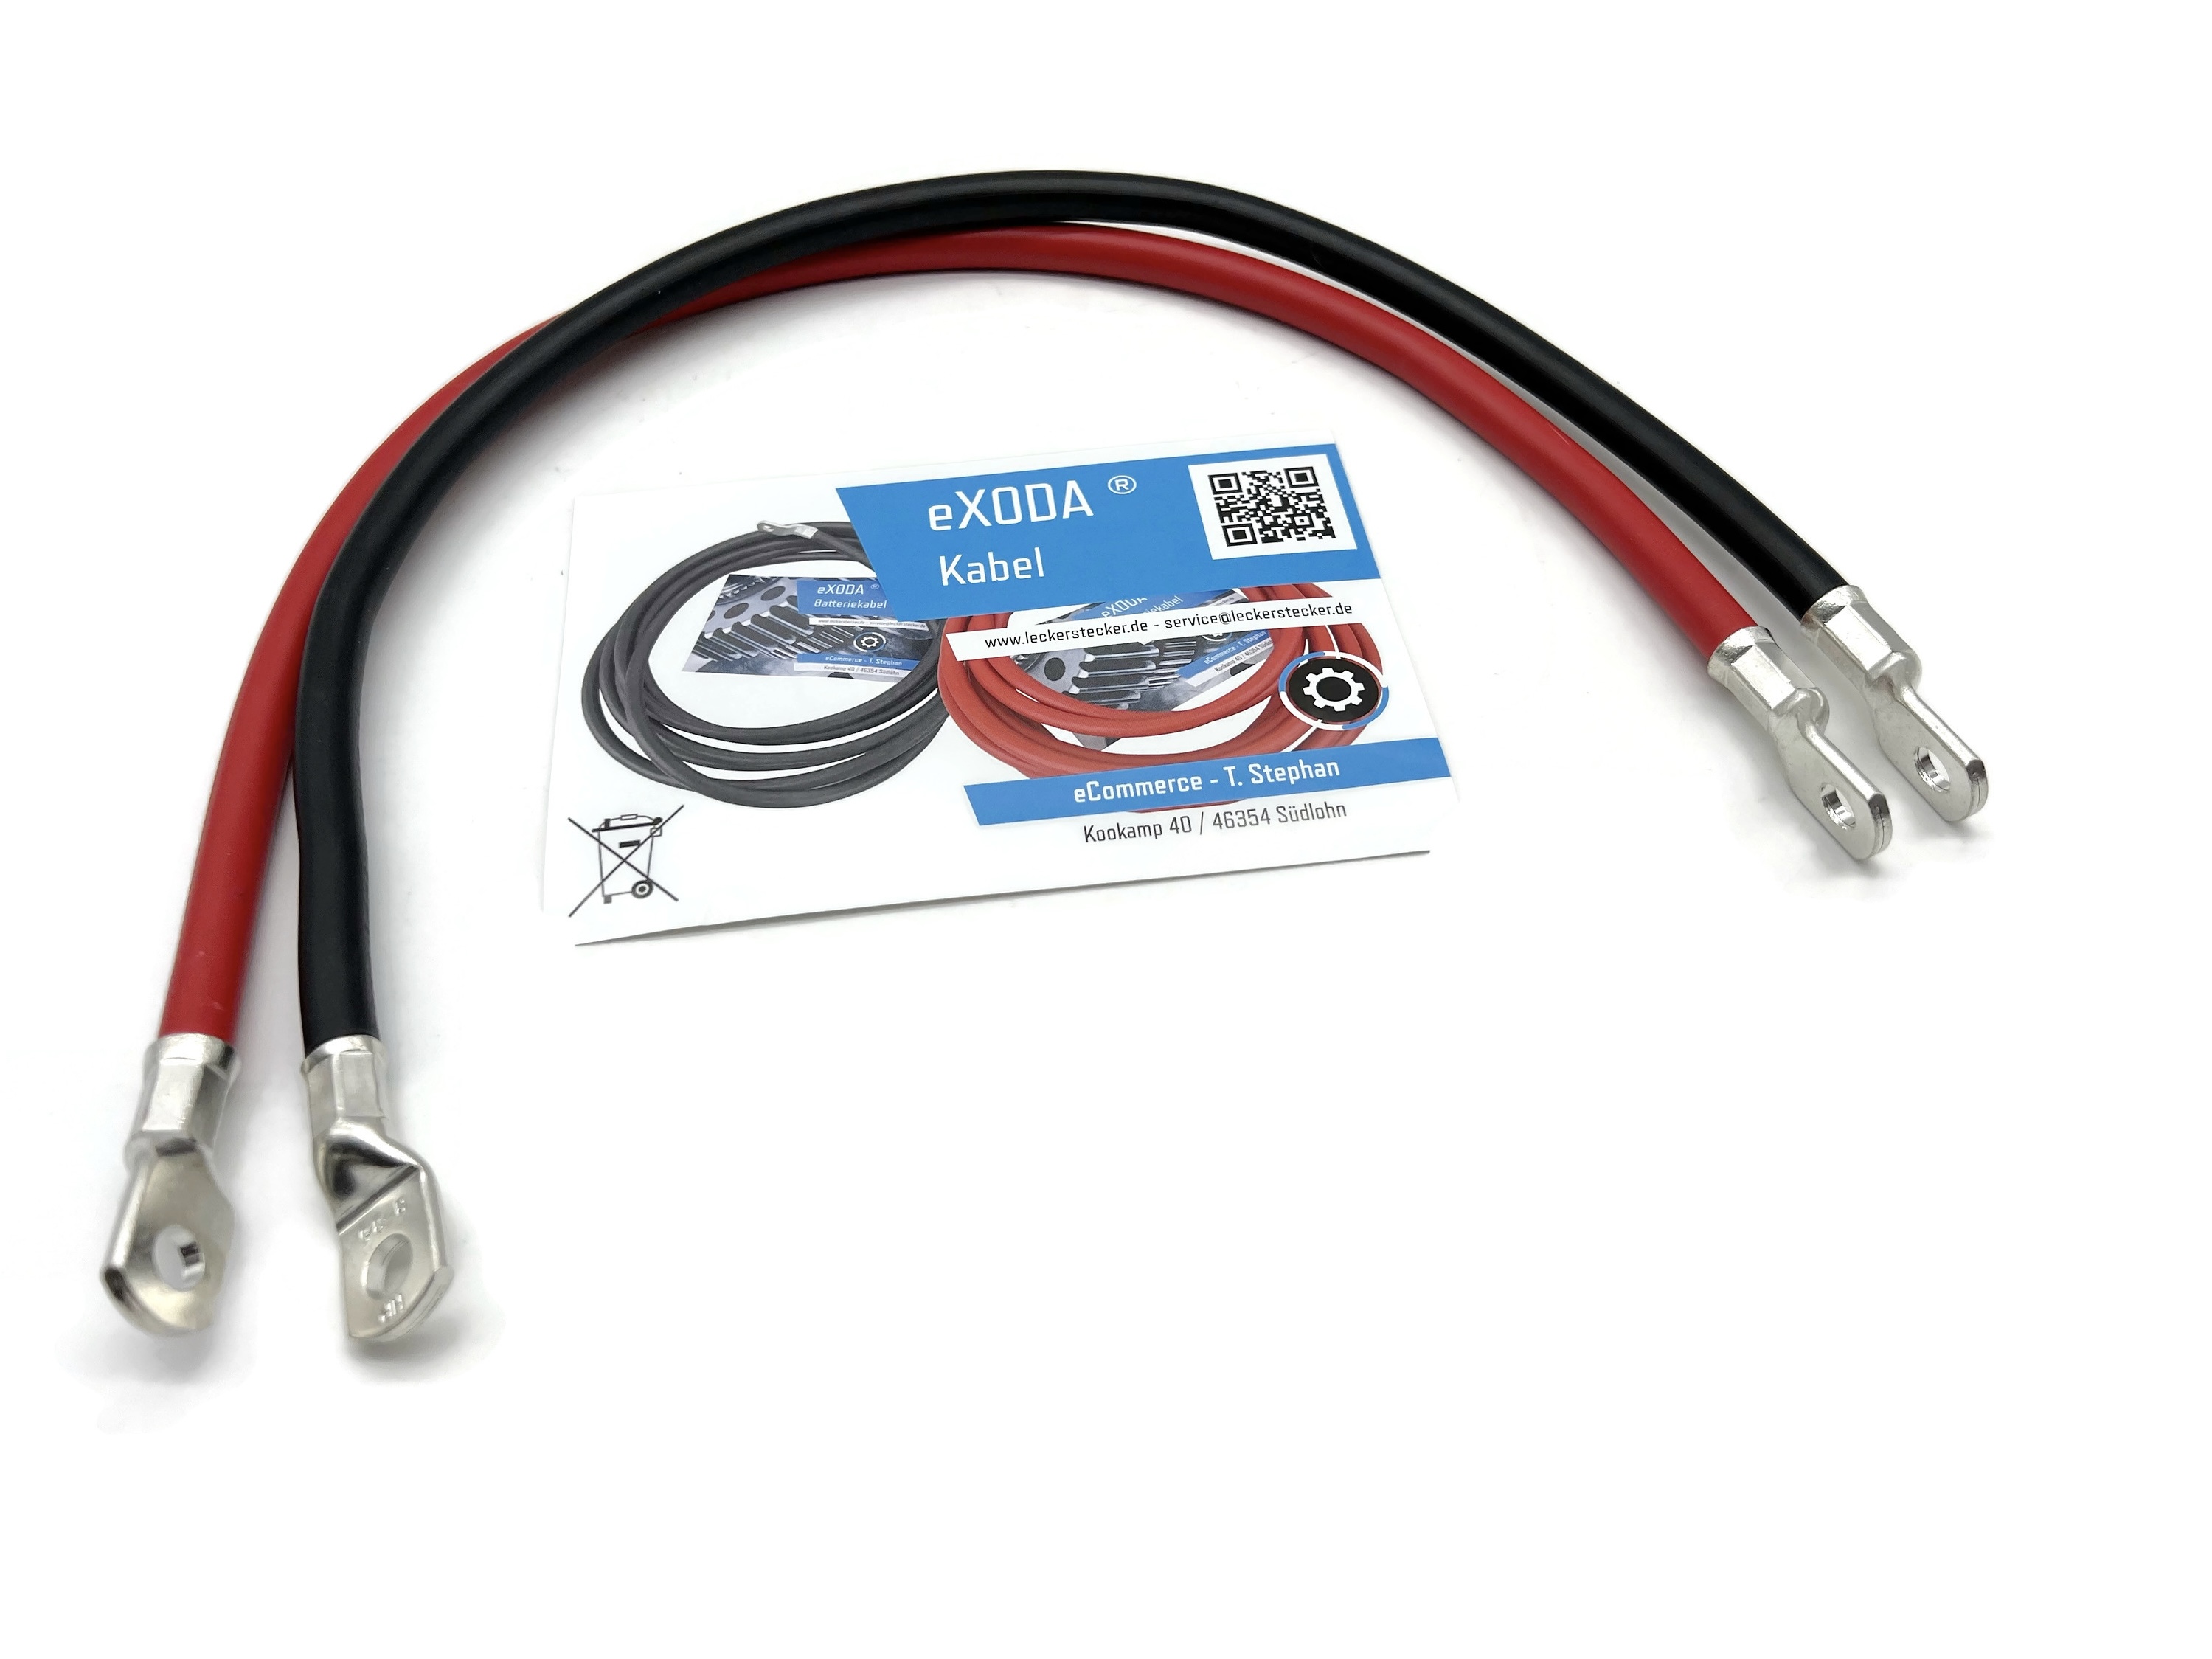 Mobil Batterie Kabel 16 25 35 50mm² Rot oder Schwarz mit Kabelschuh M8 Anschlusskabel 